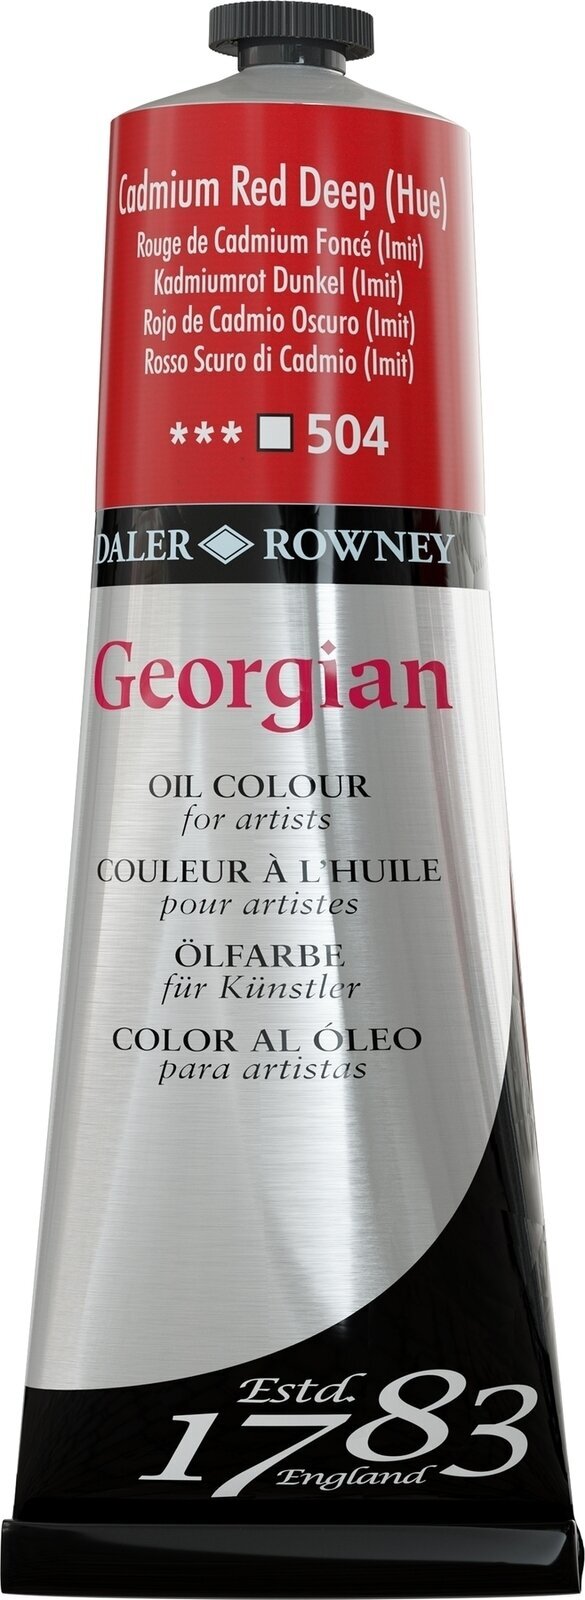 Ölfarbe Daler Rowney Georgian Ölgemälde Cadmium Red Deep Hue 225 ml 1 Stck